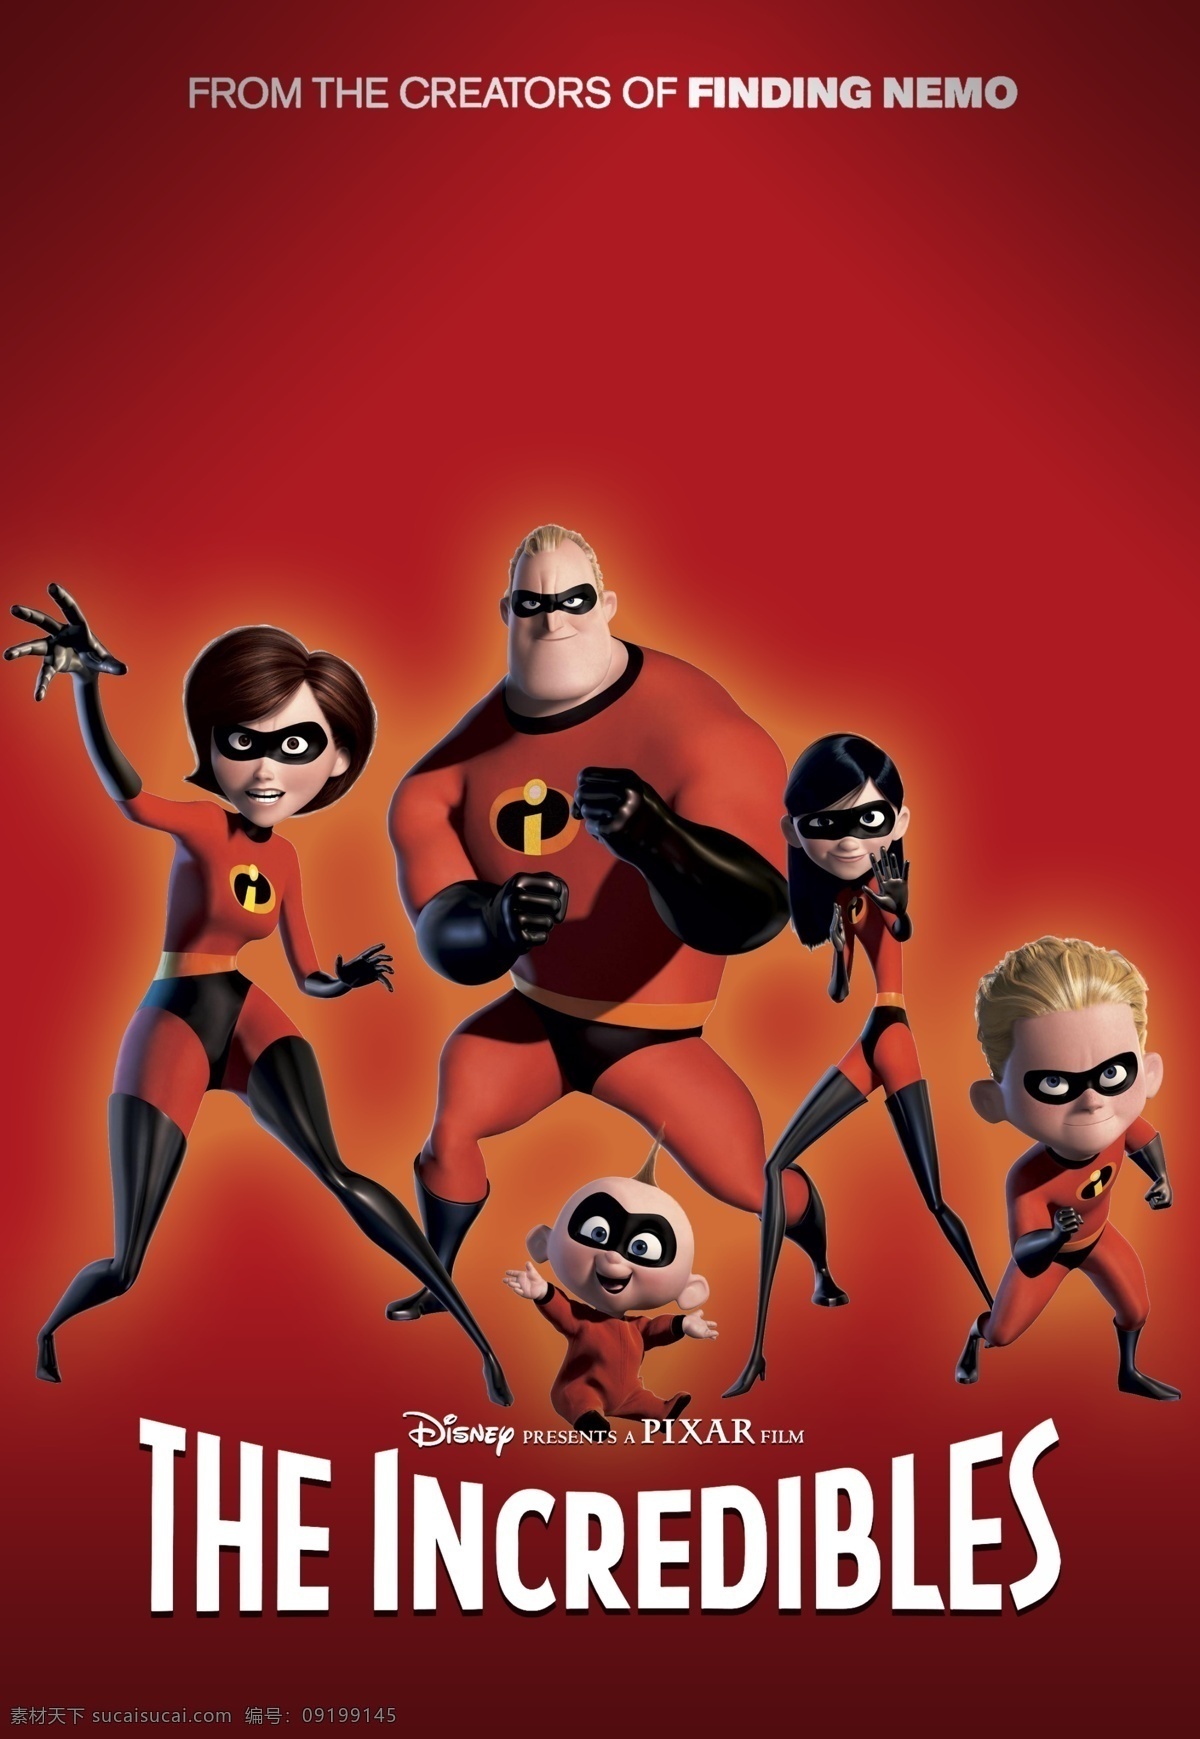 超人总动员 超人特攻队 超人家族 动画 皮克斯 电影 电影海报 海报 pixar 动漫动画